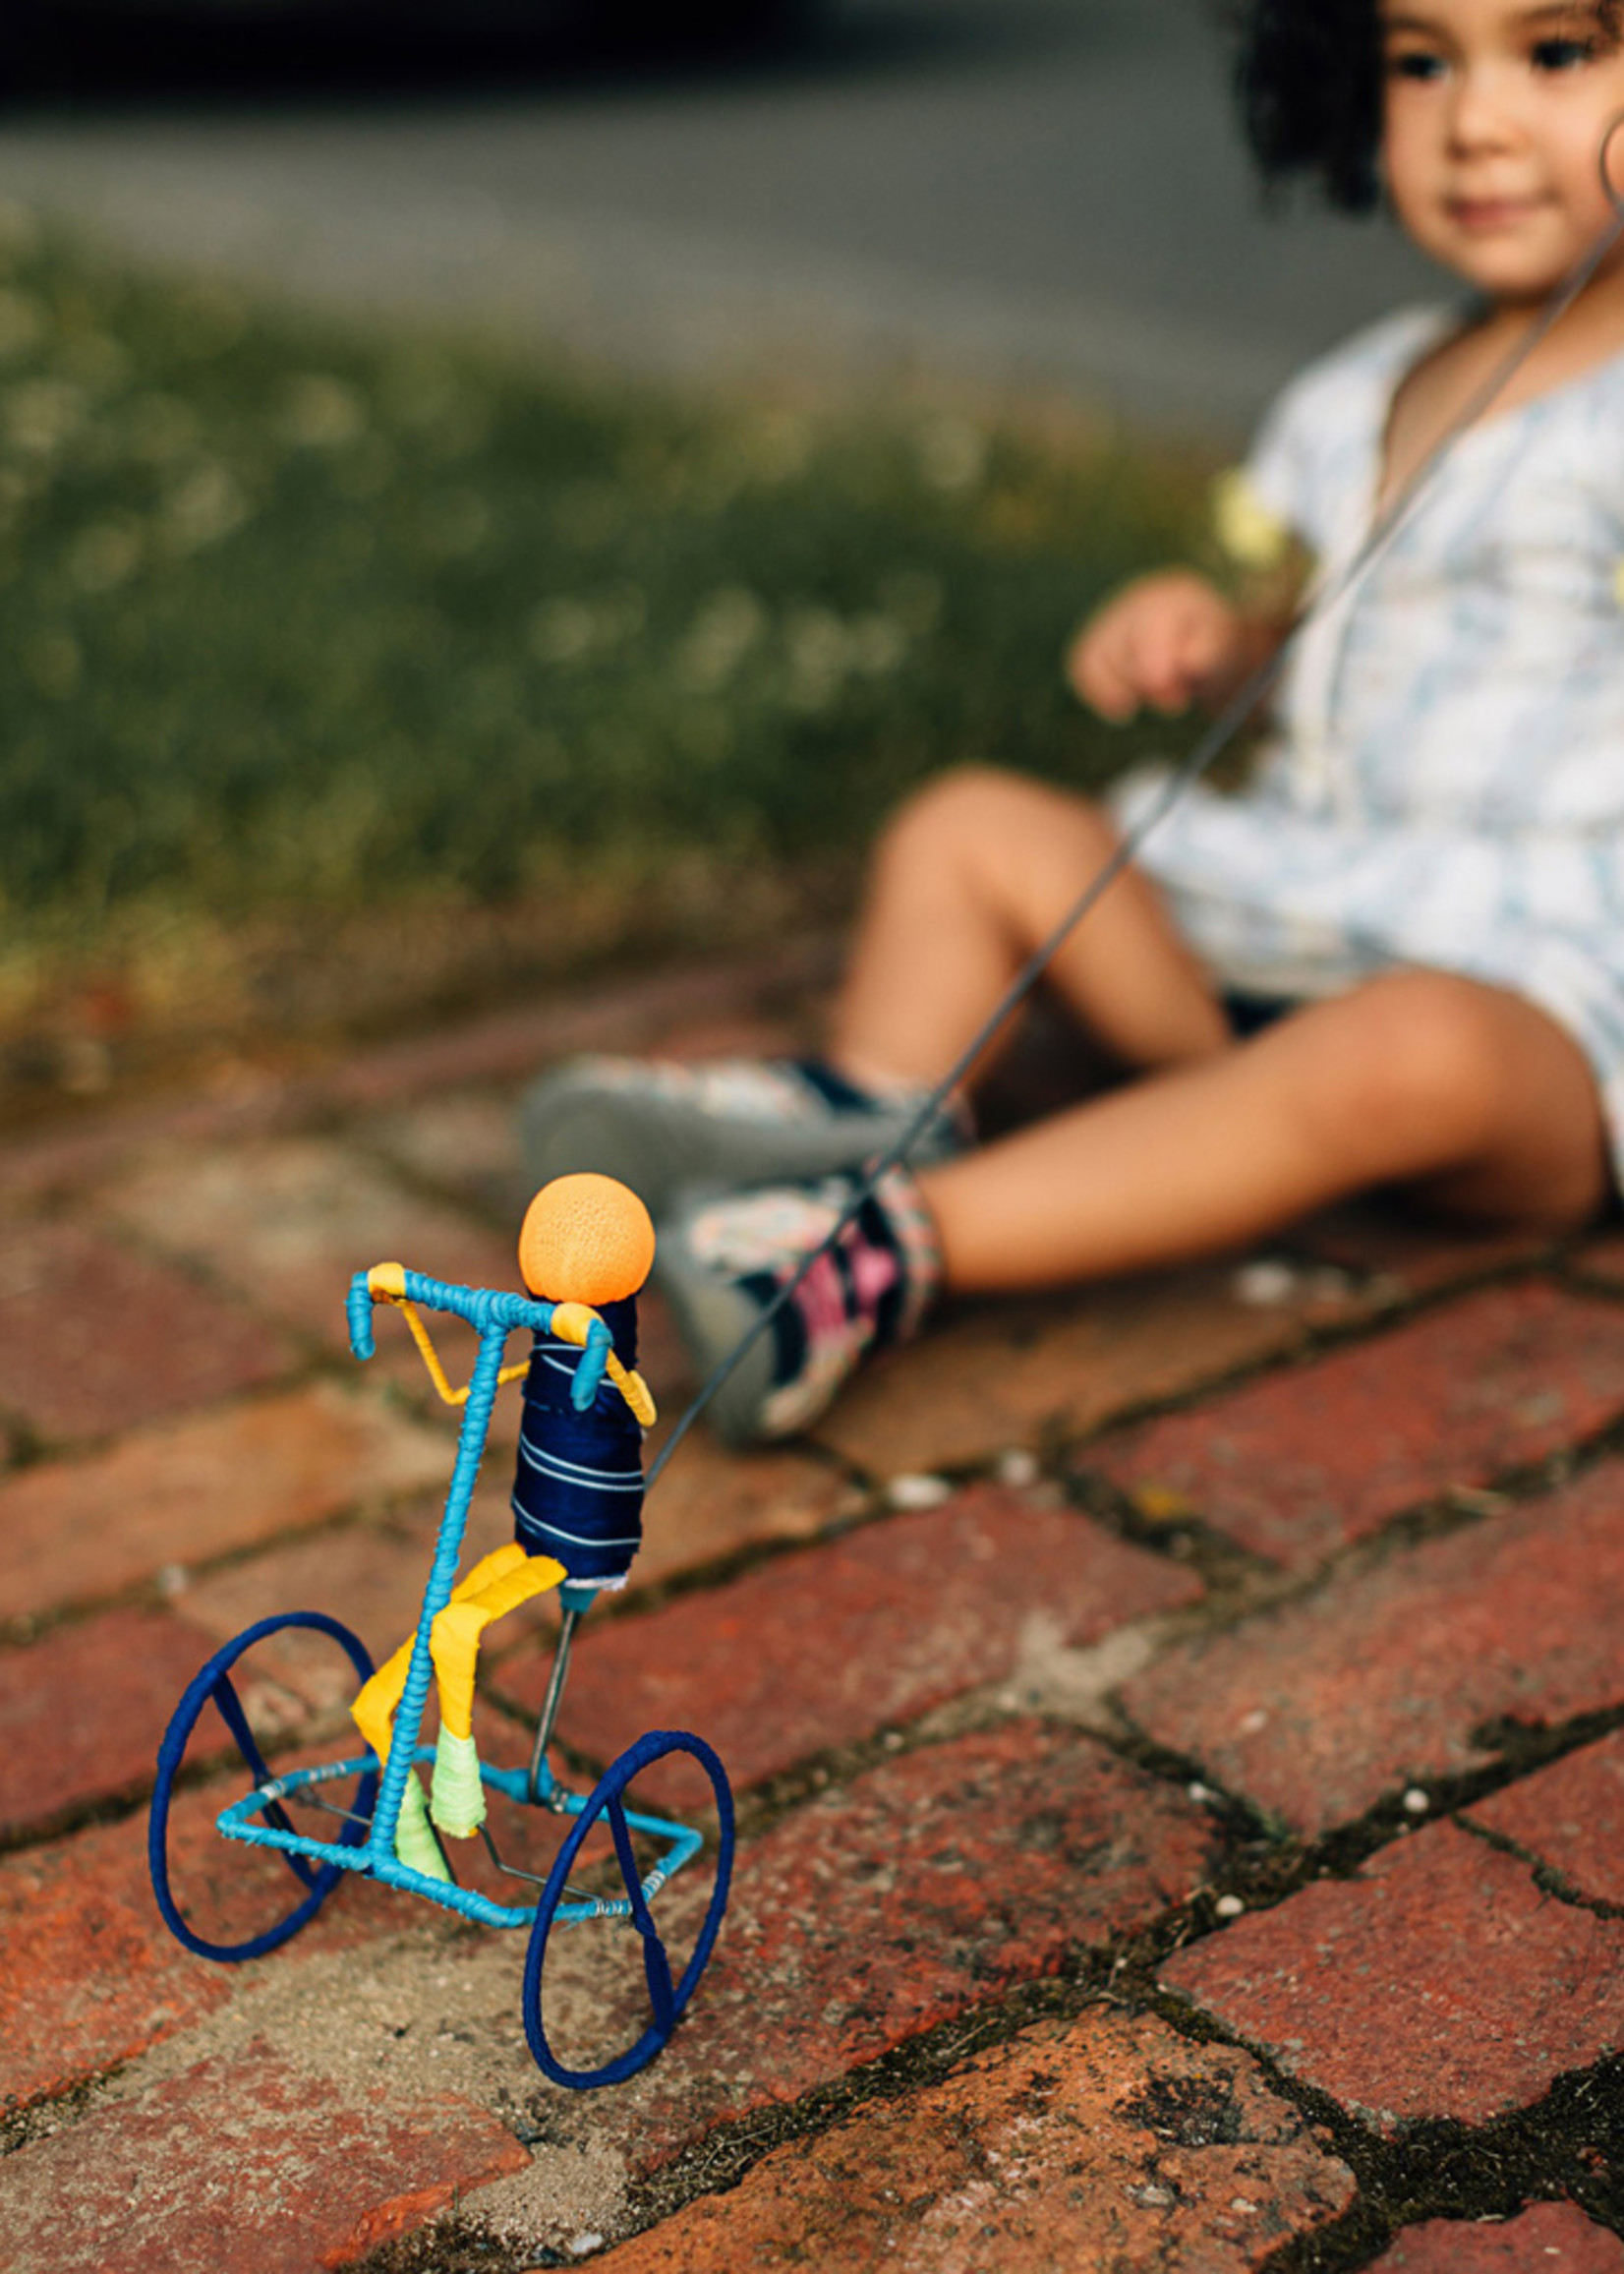 Galimoto Bicycle Toy